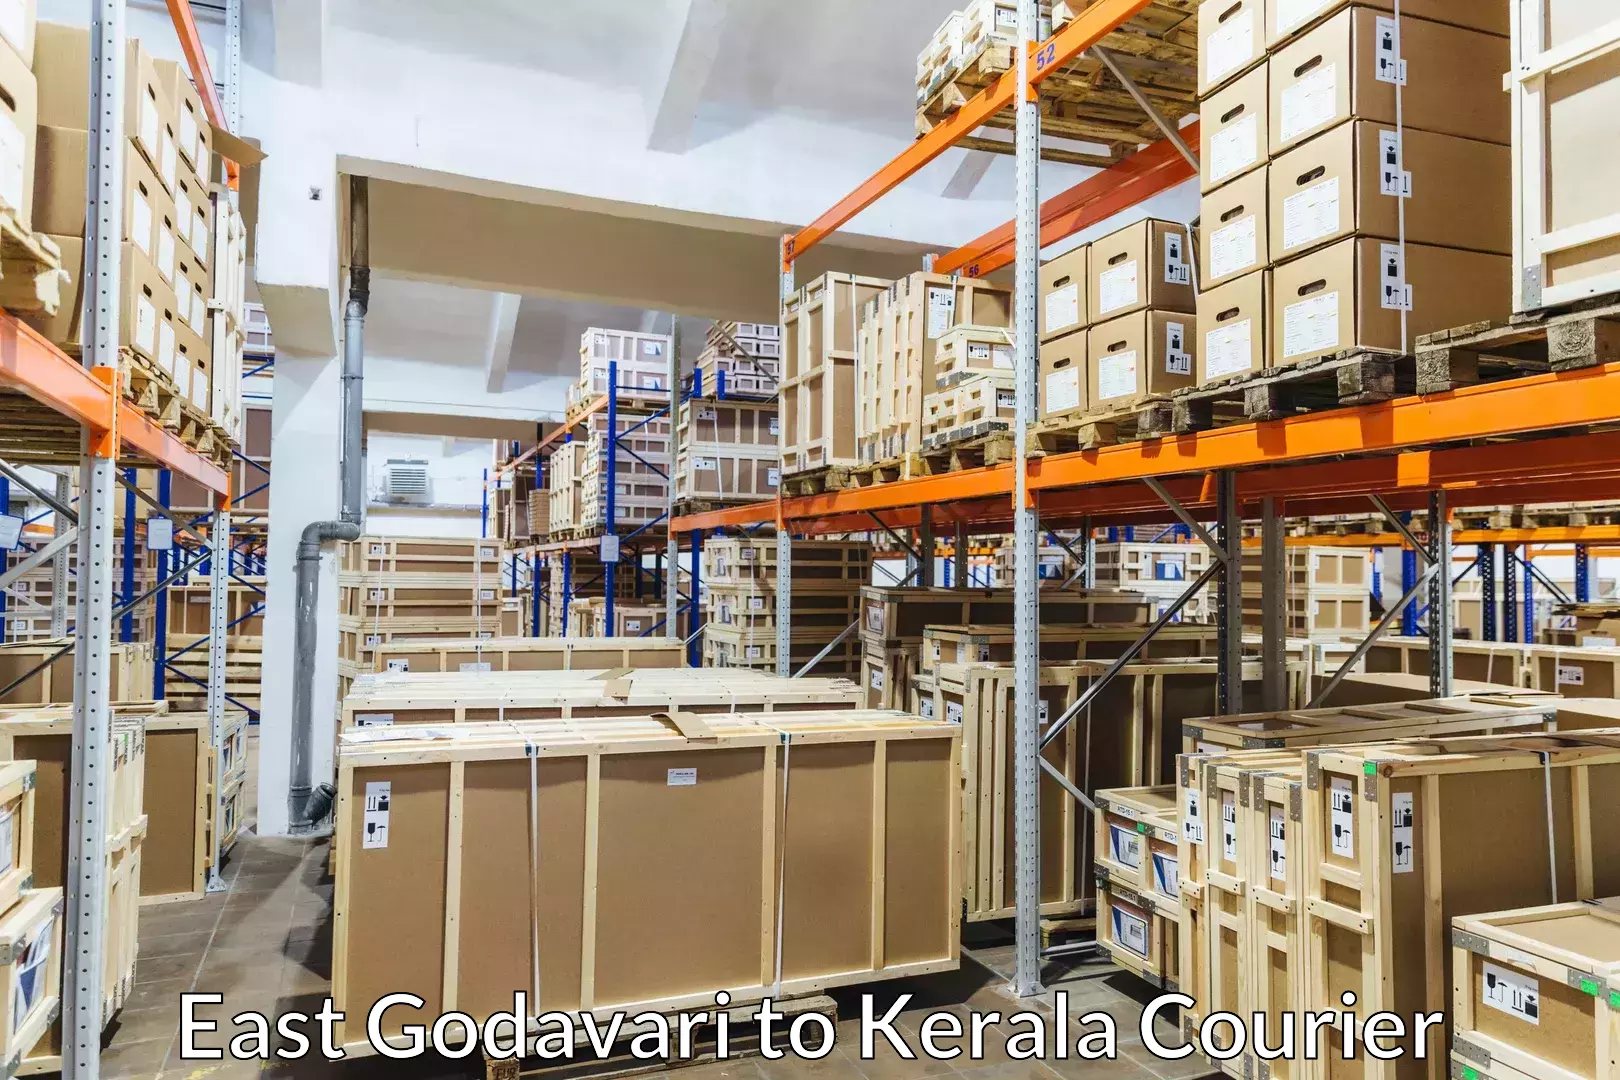 Trusted moving company East Godavari to Kerala